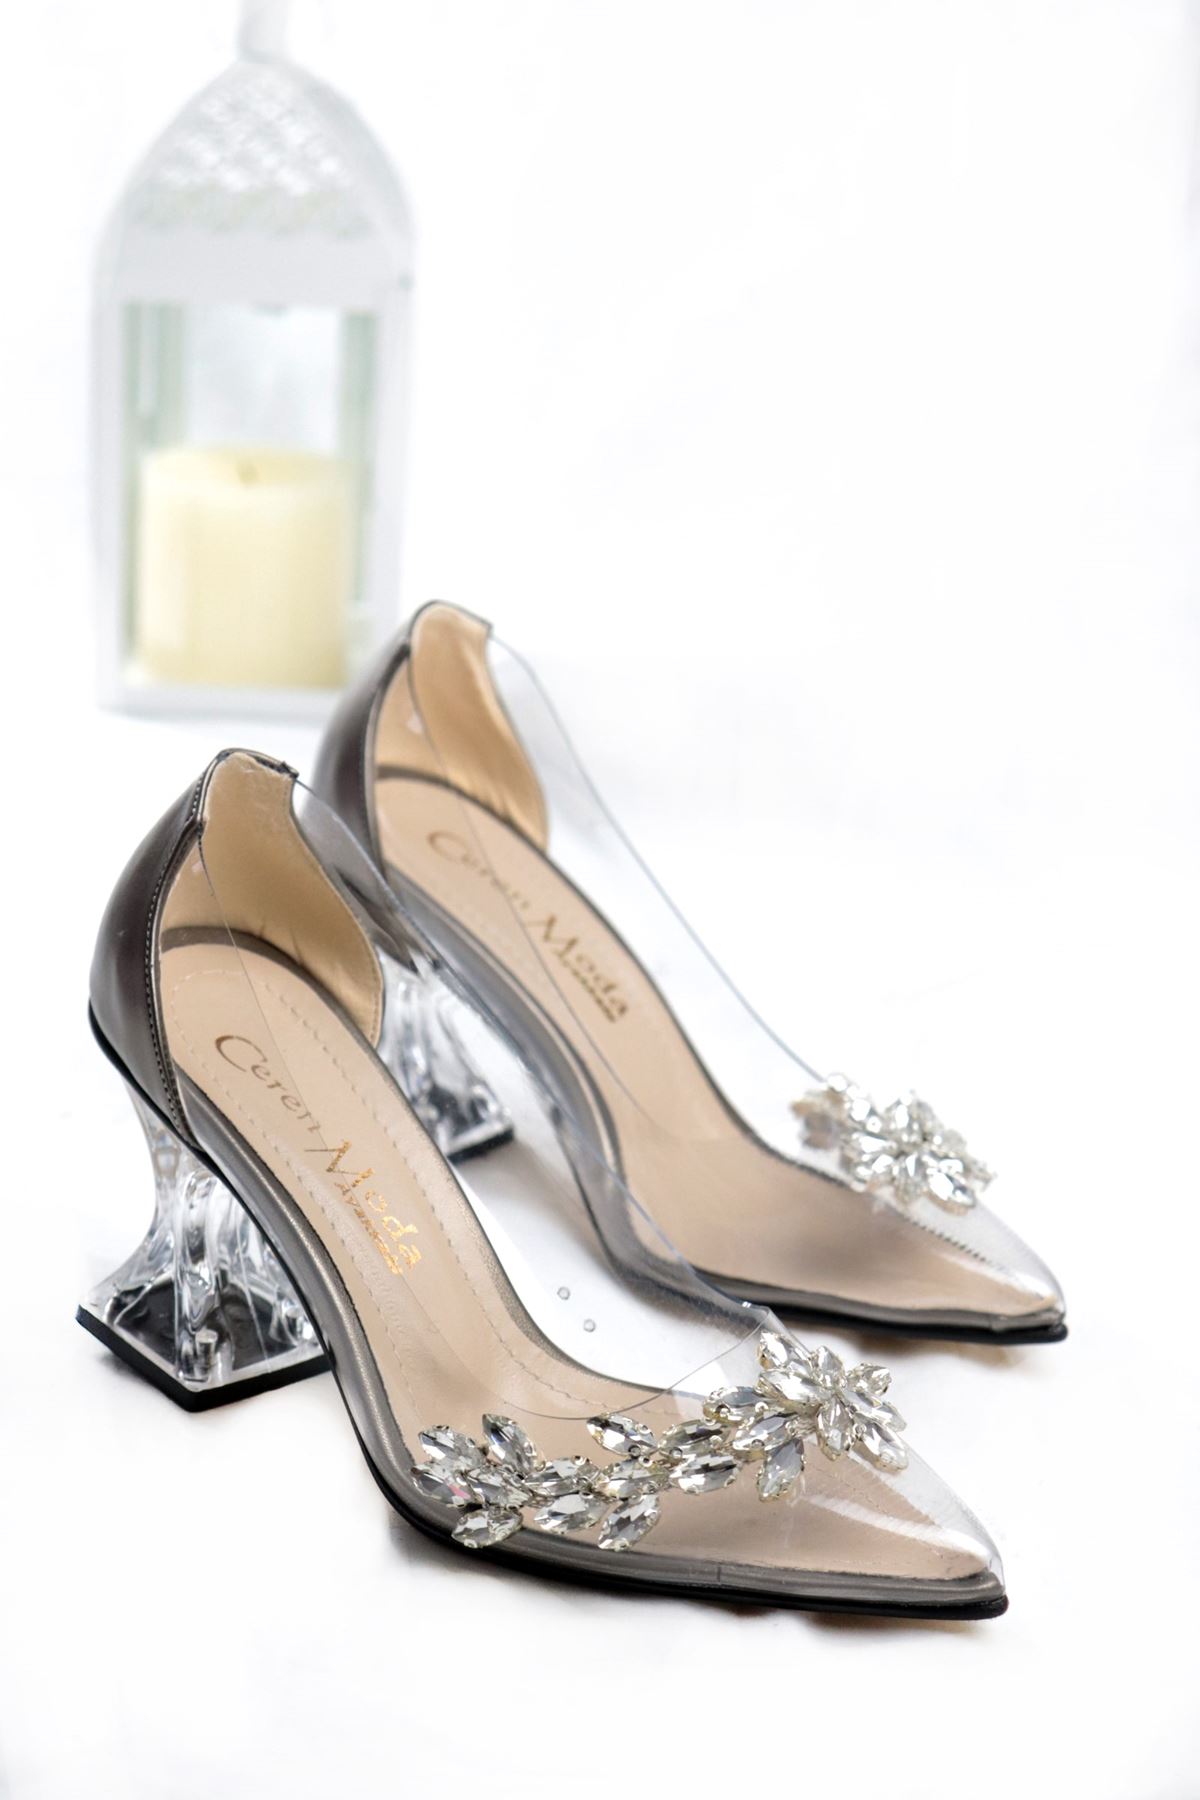 Trendayakkabı - Platin Şeffaf Topuklu Kadın Ayakkabı 